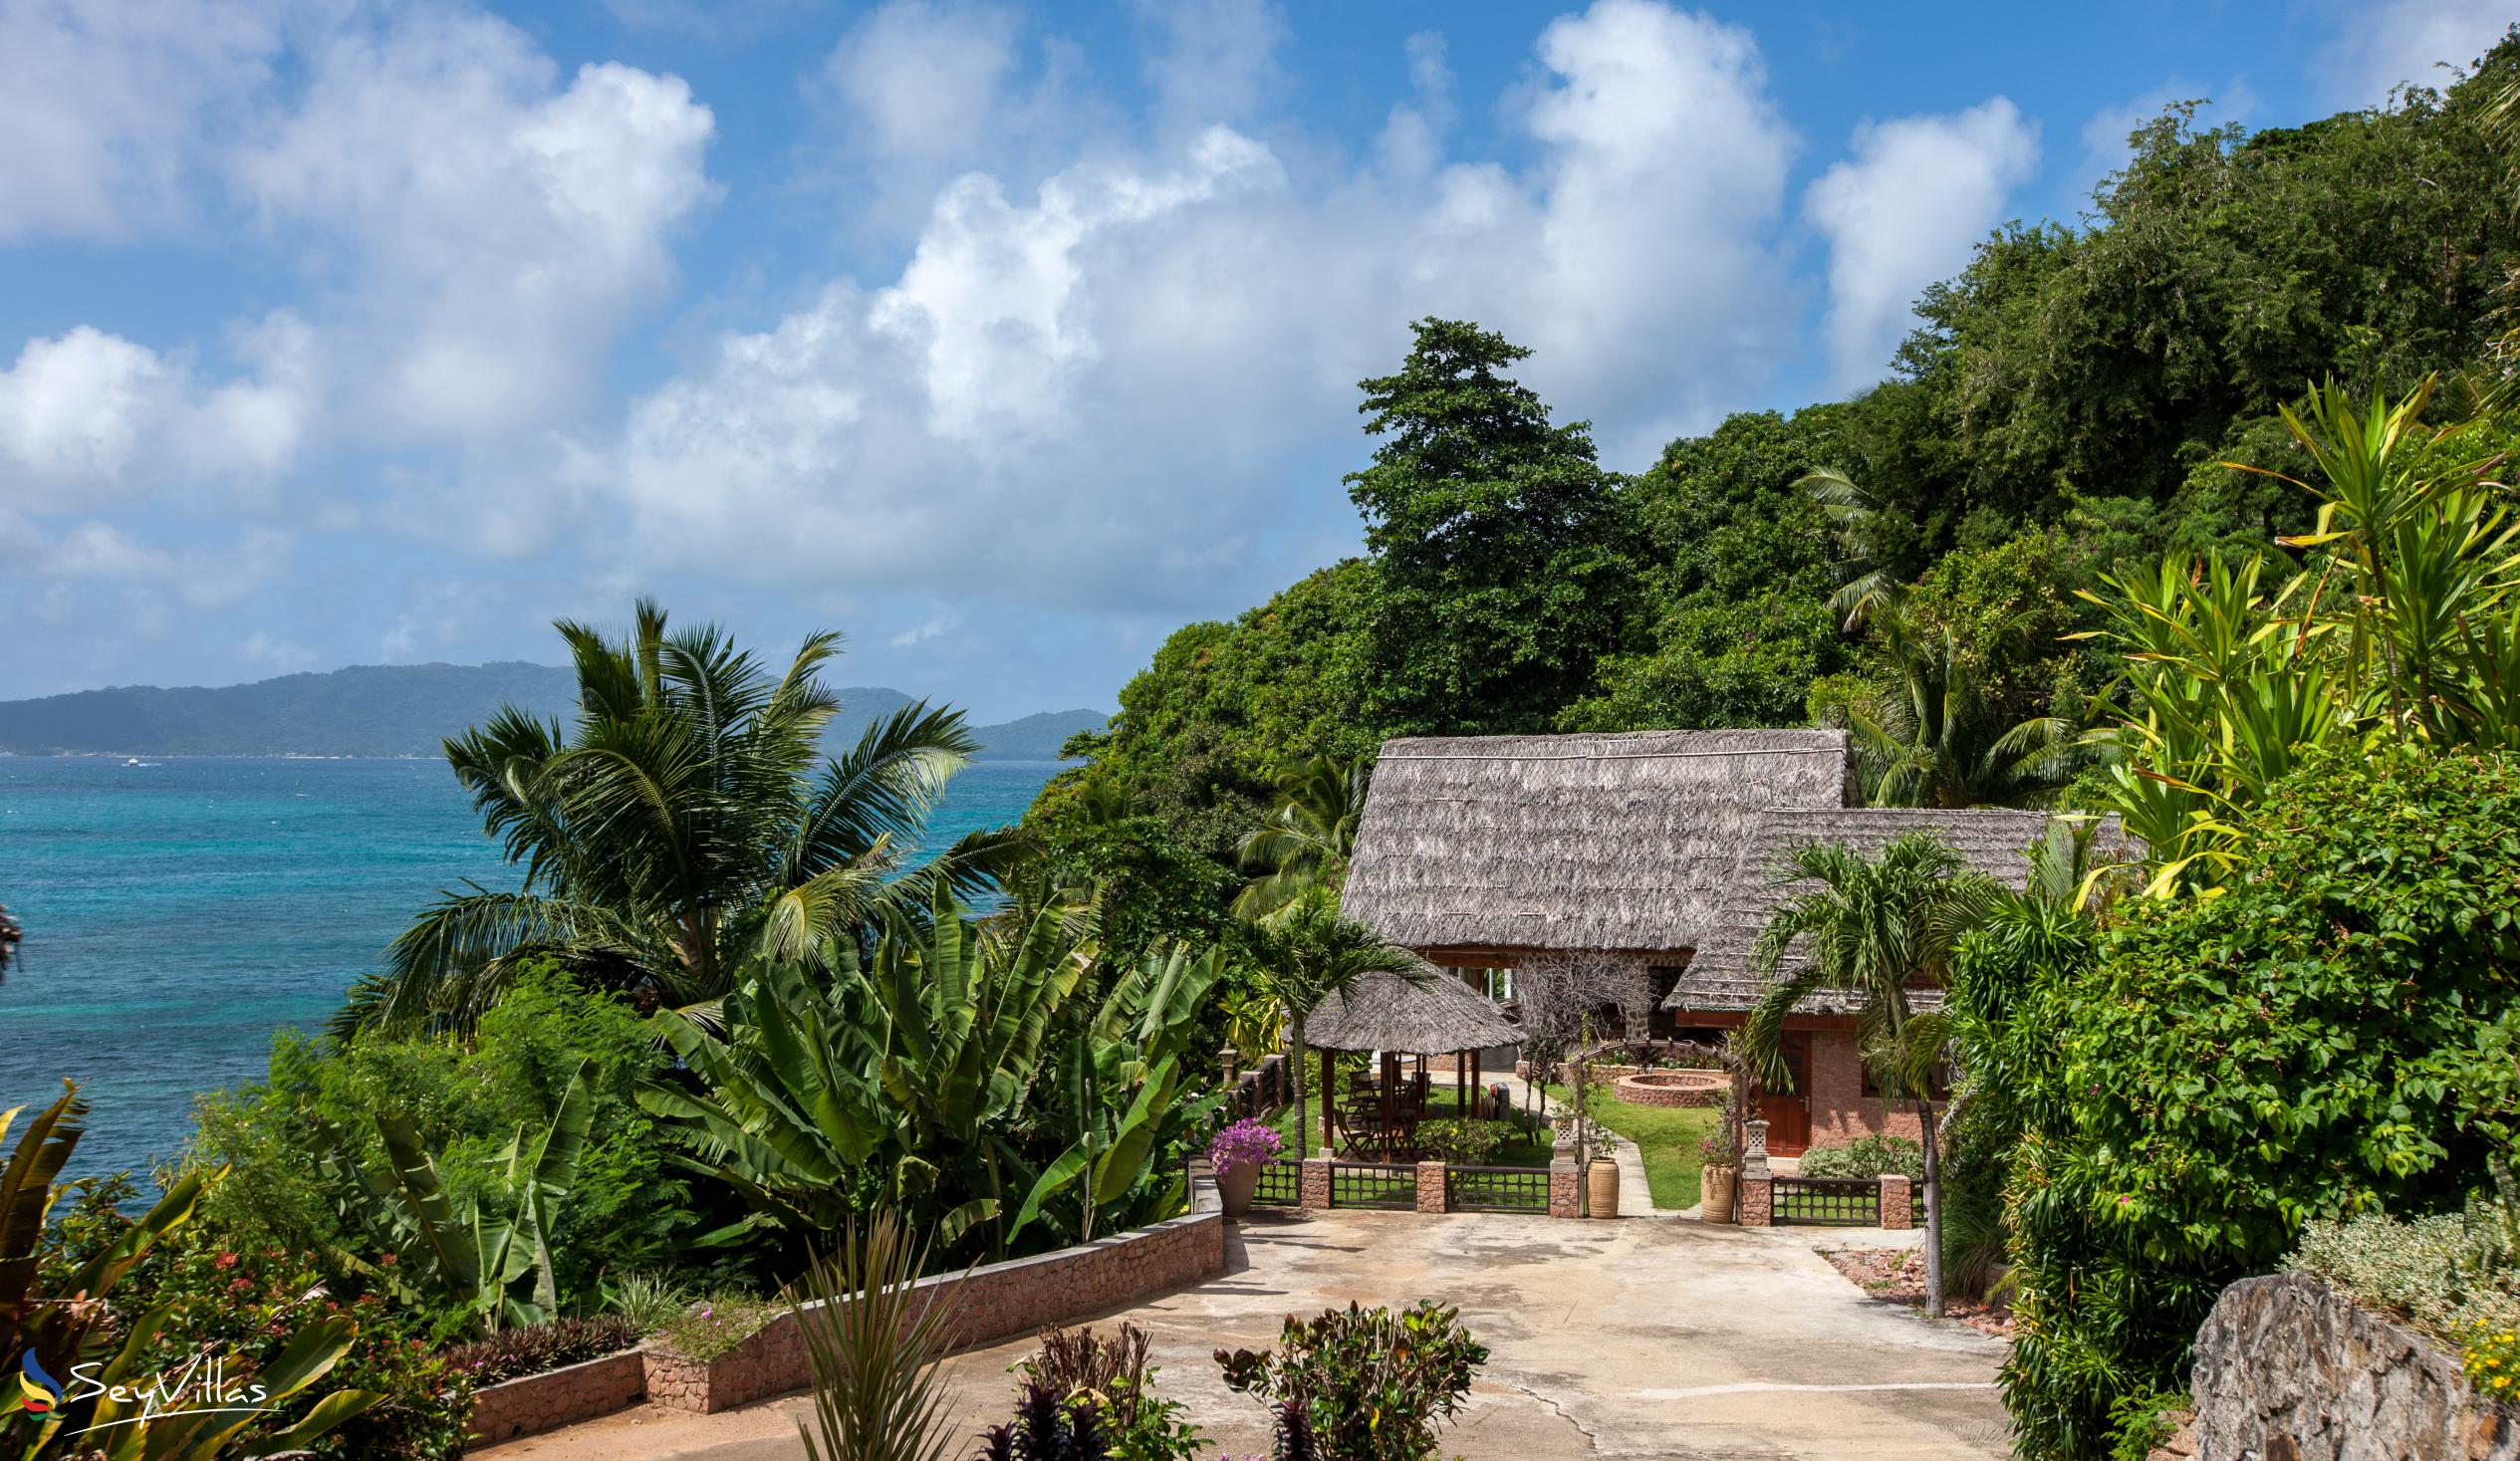 Foto 12: Colibri Guesthouse - Aussenbereich - Praslin (Seychellen)